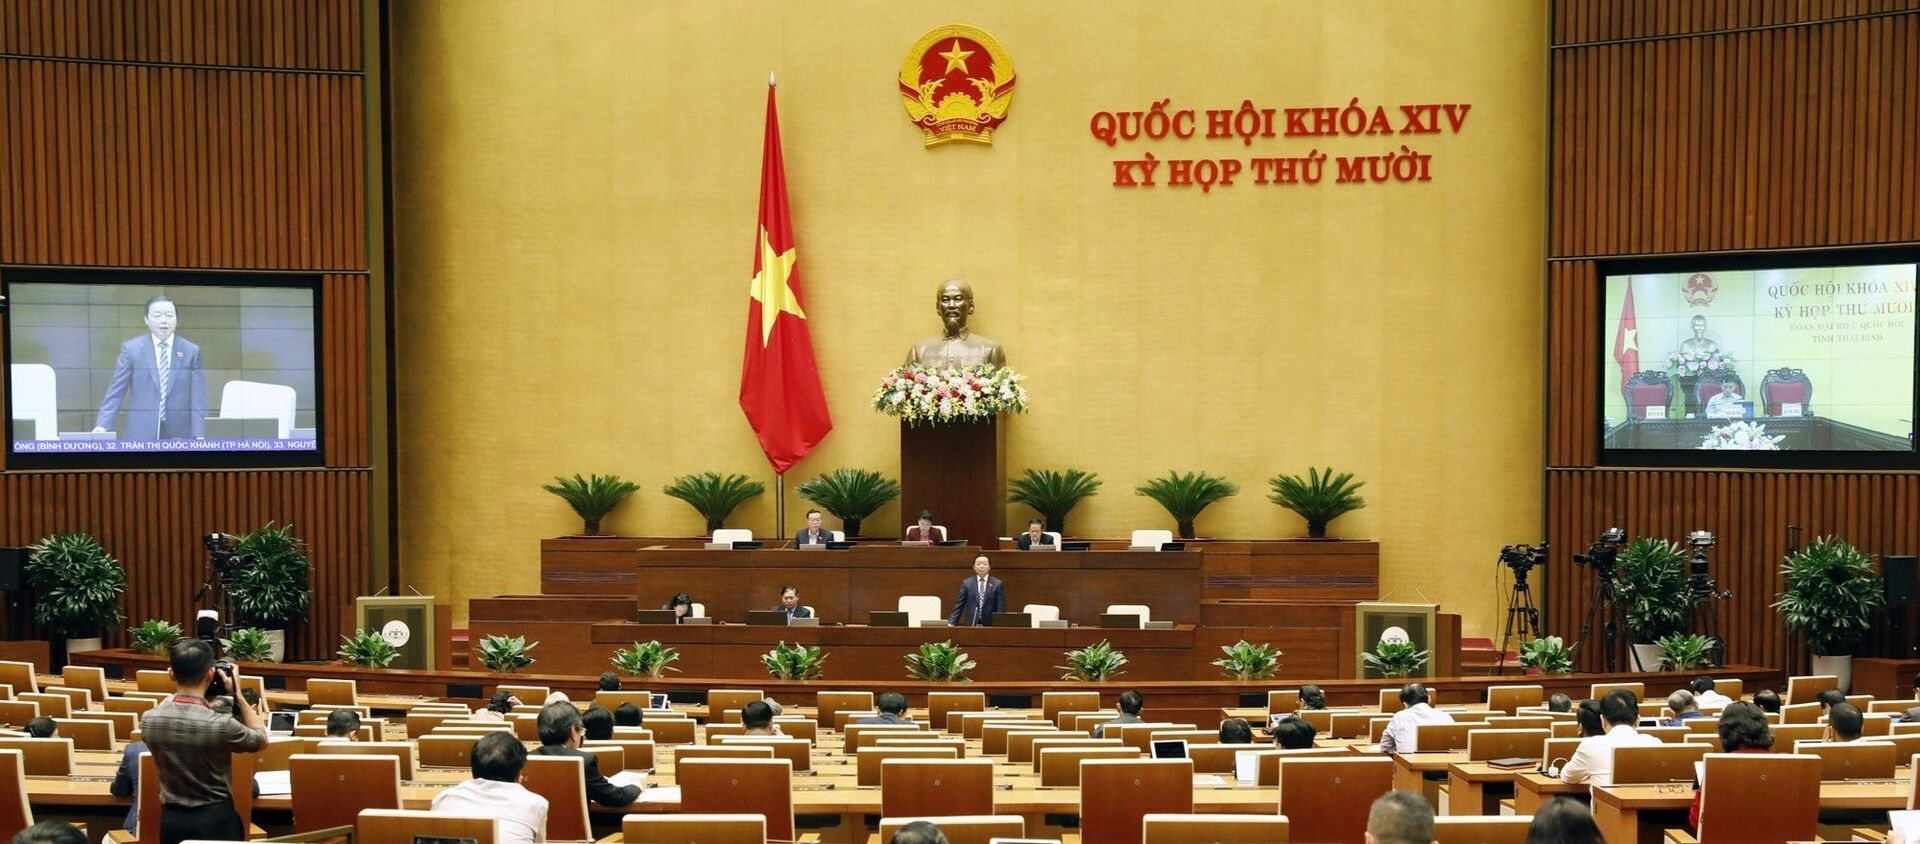 Kỳ họp thứ mười, Quốc hội khoá XIV: Thảo luận về dự thảo Luật Bảo vệ môi trường (sửa đổi) - Sputnik Việt Nam, 1920, 24.10.2020